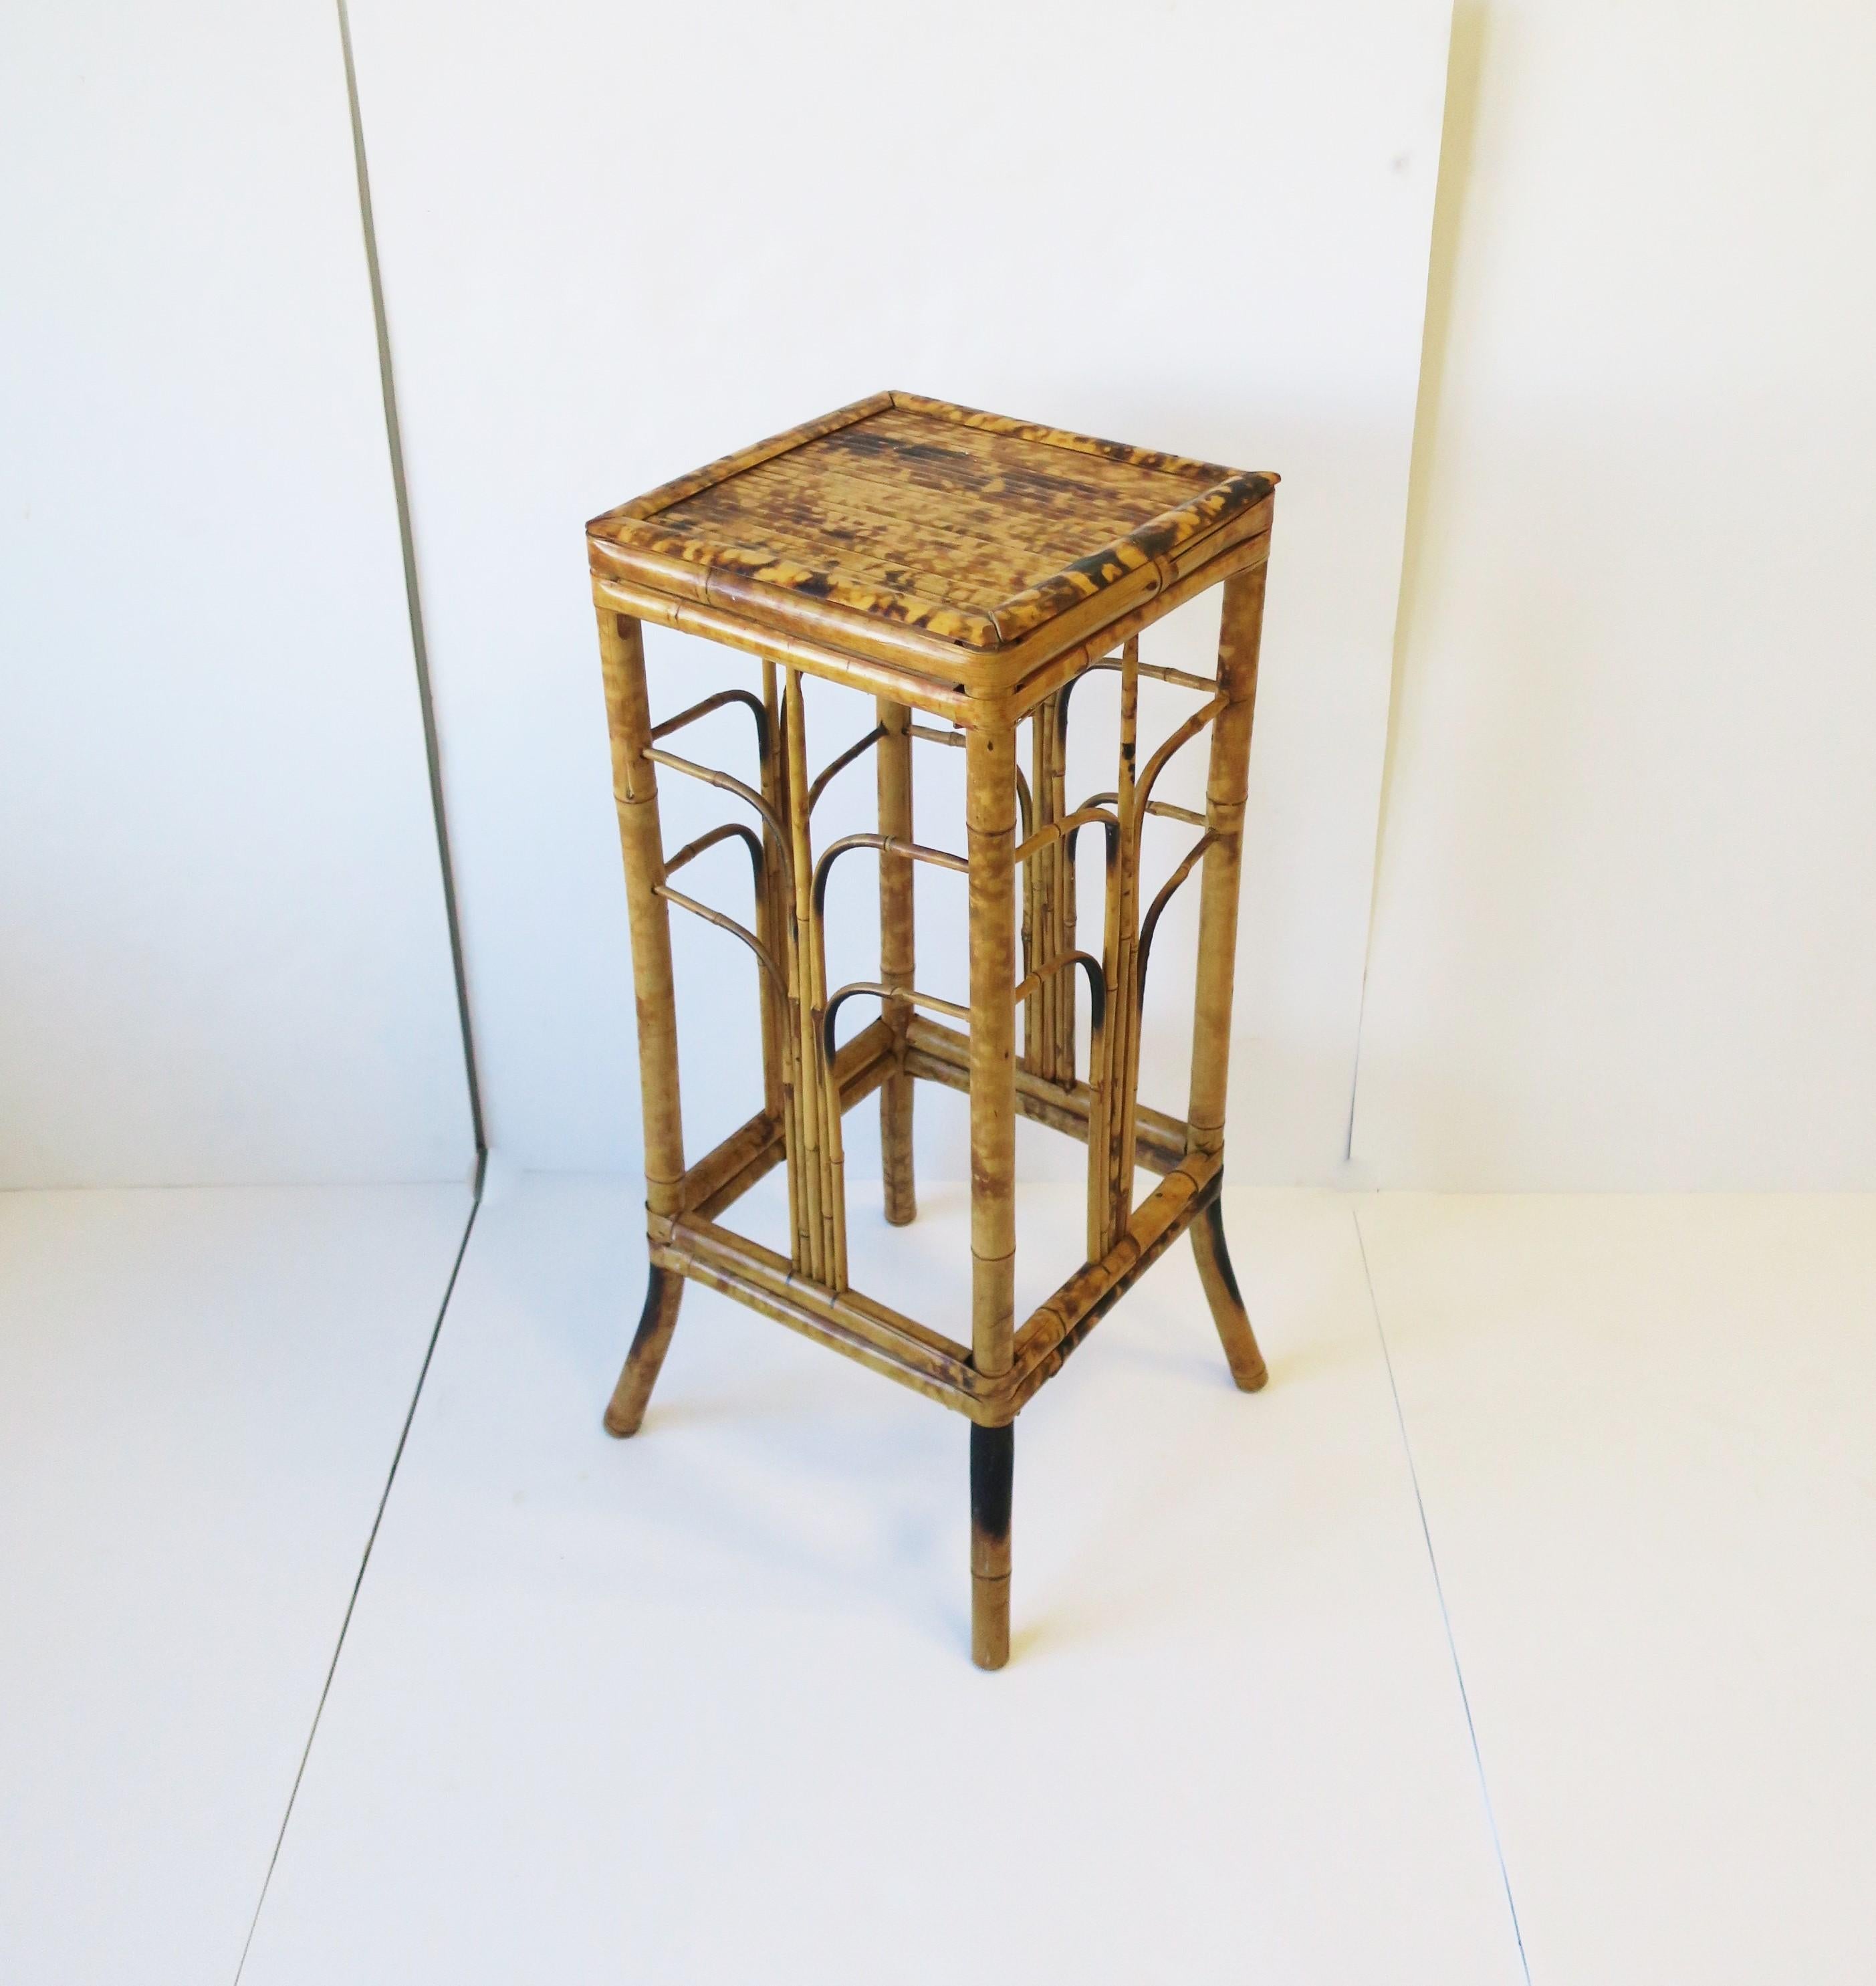 Table à colonne à piédestal en bambou de style Art déco moderne, vers les années 1970. Une pièce fabriquée à la main avec des lignes Art déco modernes. A utiliser pour présenter une plante, des livres, un vase, une urne, etc. 

Les dimensions